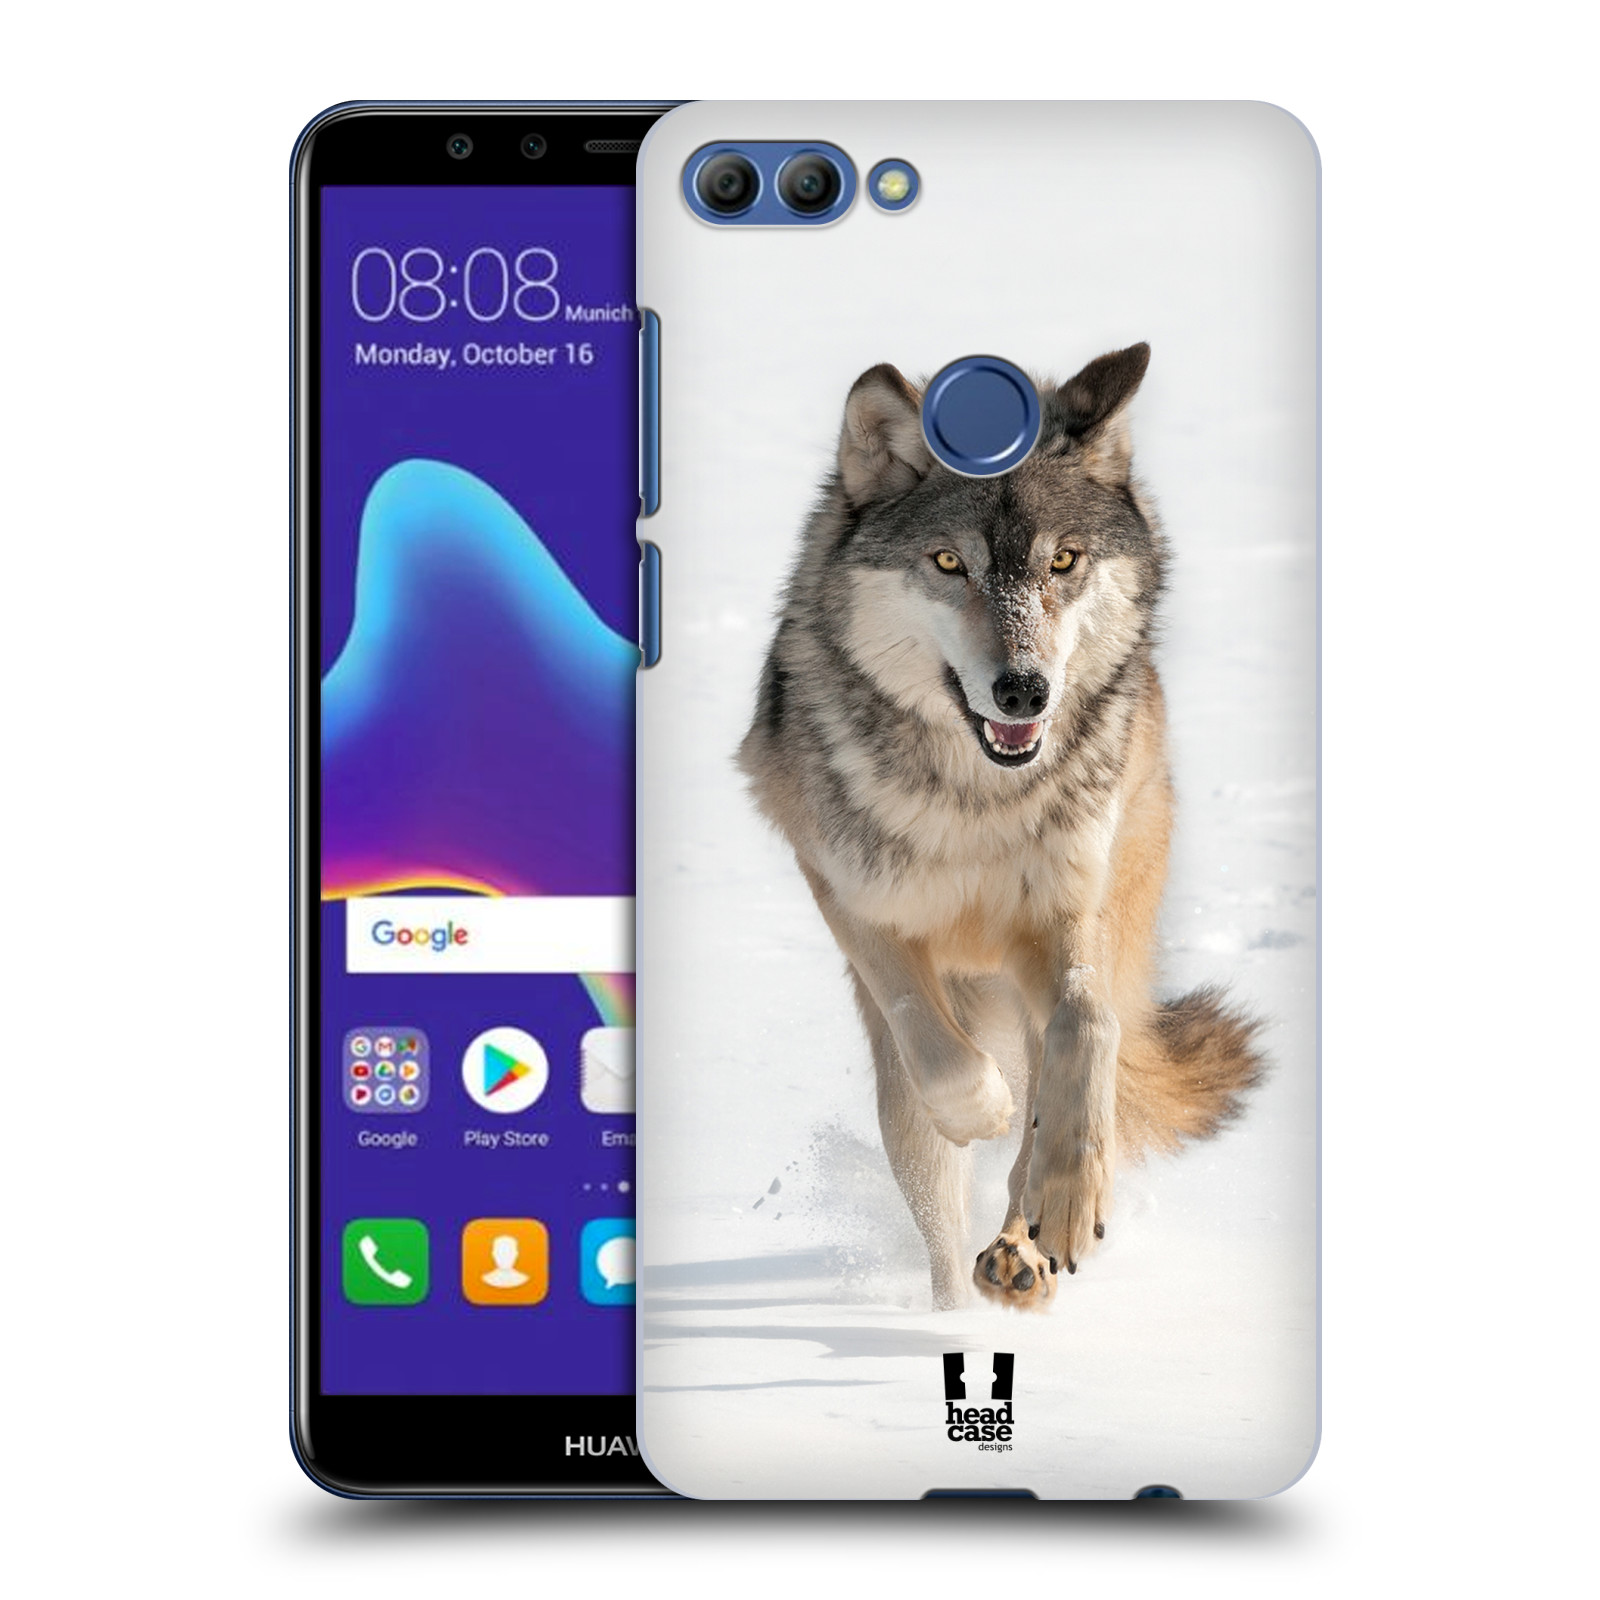 HEAD CASE plastový obal na mobil Huawei Y9 2018 vzor Divočina, Divoký život a zvířata foto BĚŽÍCÍ VLK